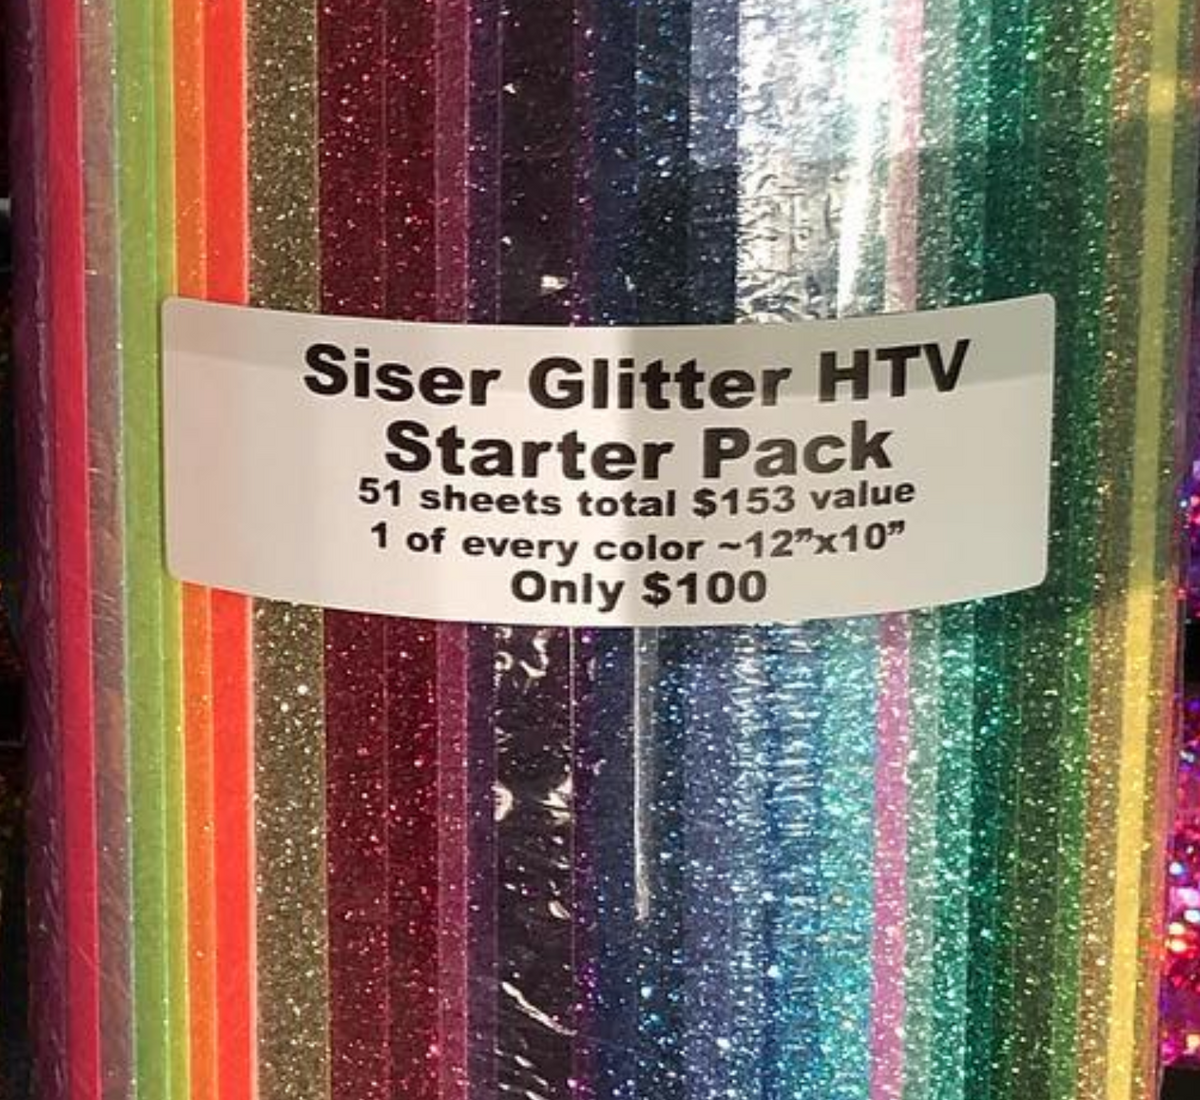 Siser Glitter Heat Transfer Vinyl – 12” – 5 Yard Roll